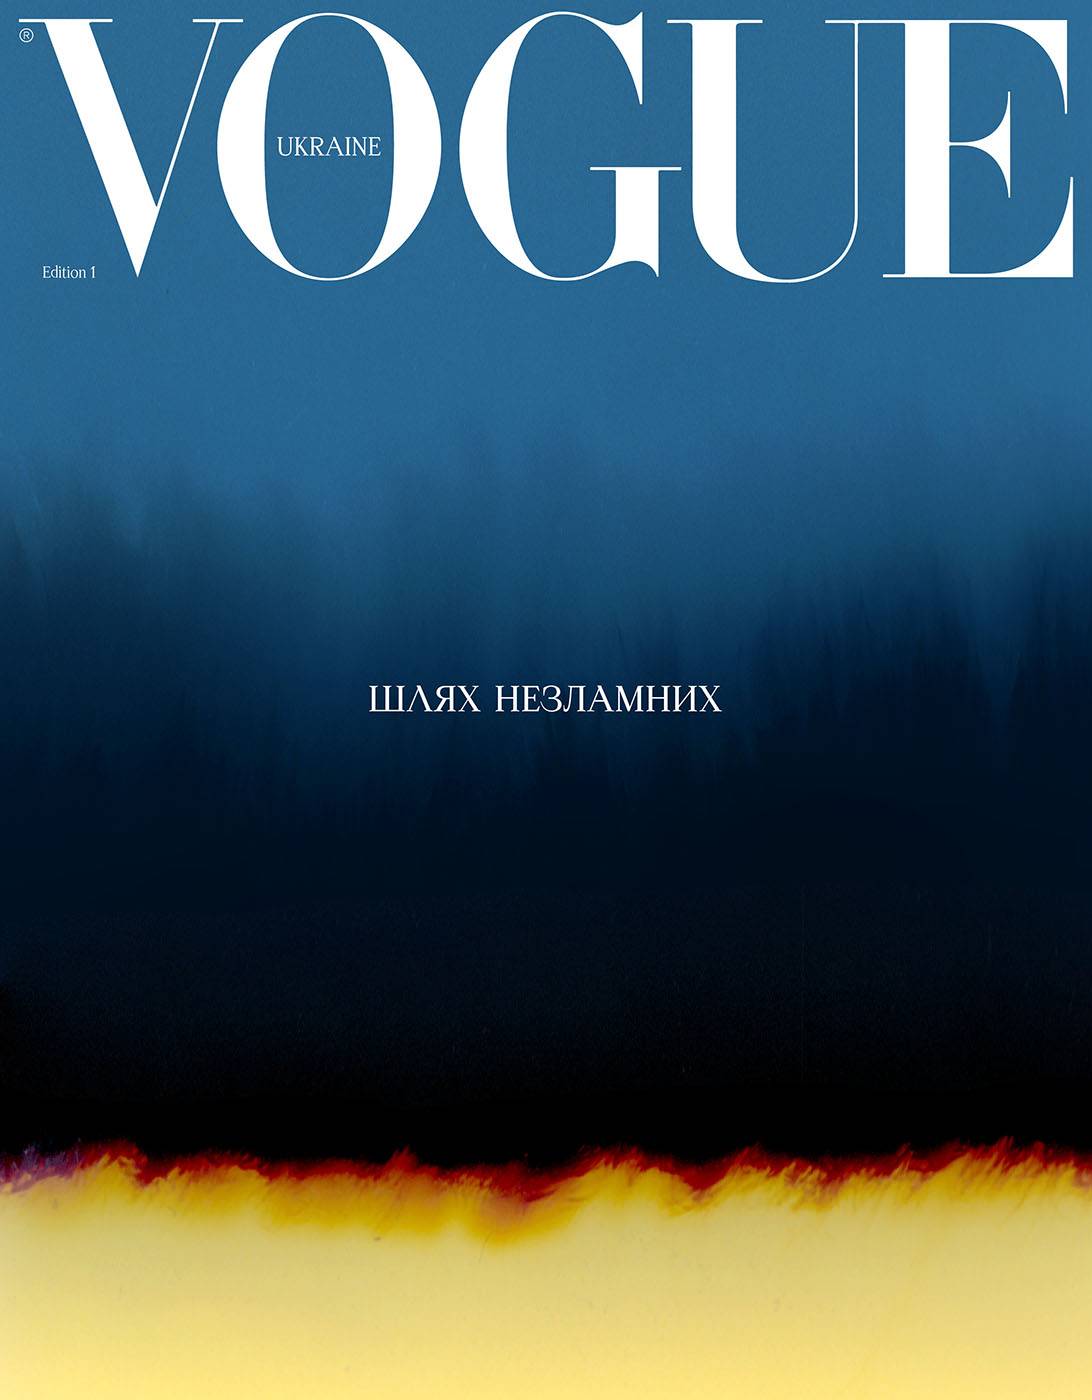 Okładka Vogue Ukraine projektu Vasylyny Vrublevskiej, wiosna 2023 (dzięki uprzejmości Vogue Ukraine)